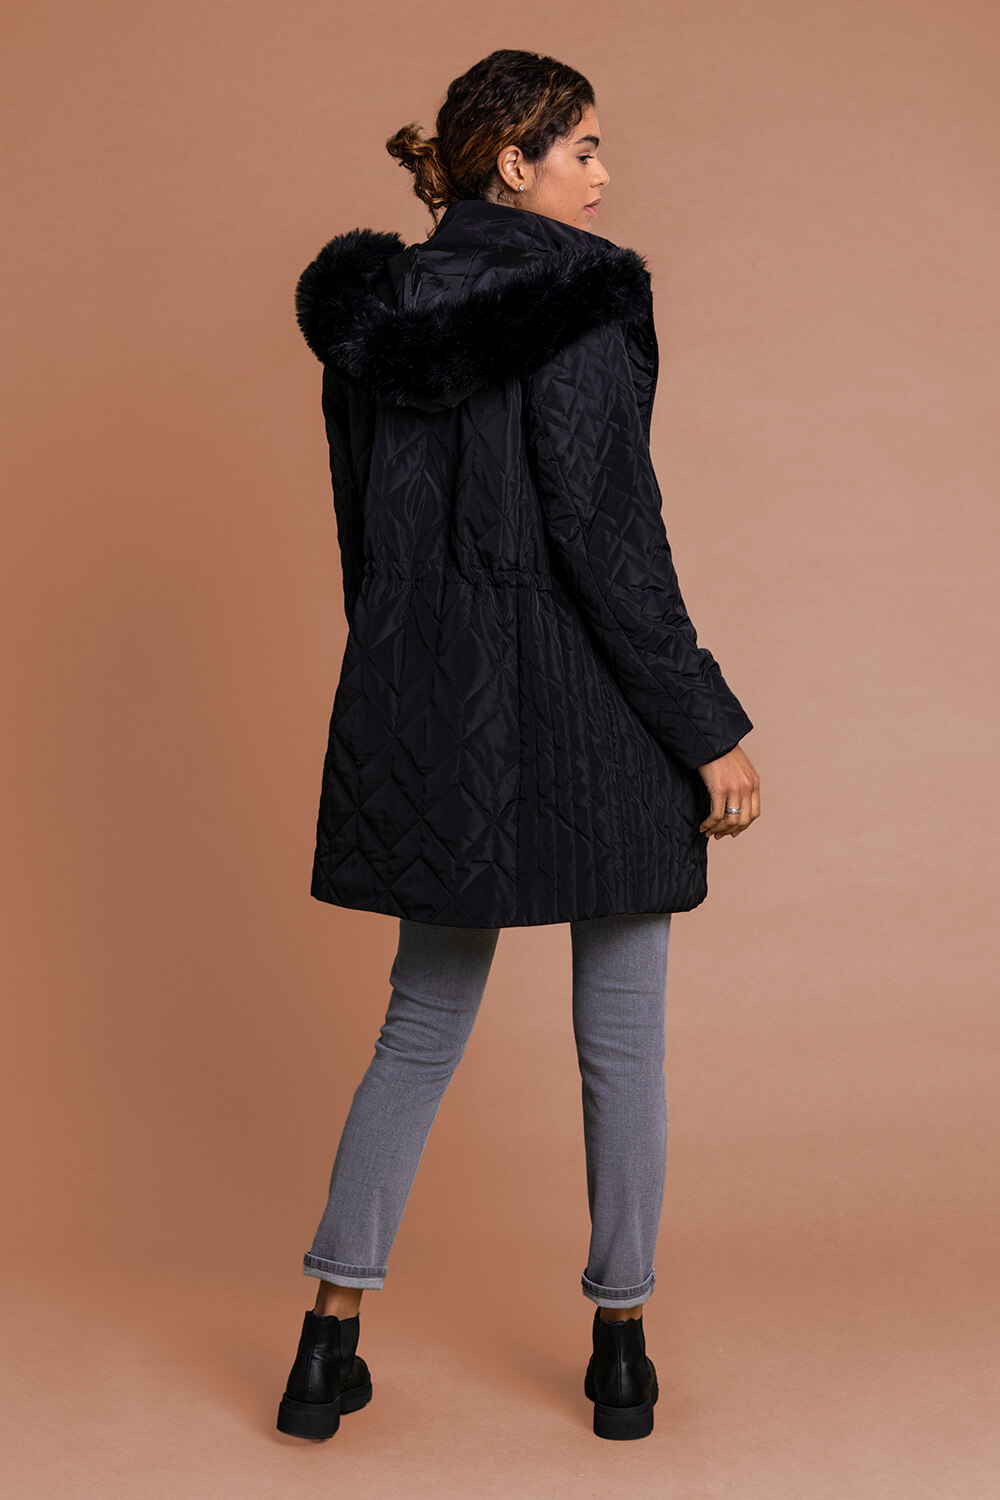 Black Faux Fur Trim Hooded Parka Coat, Image 2 of 5